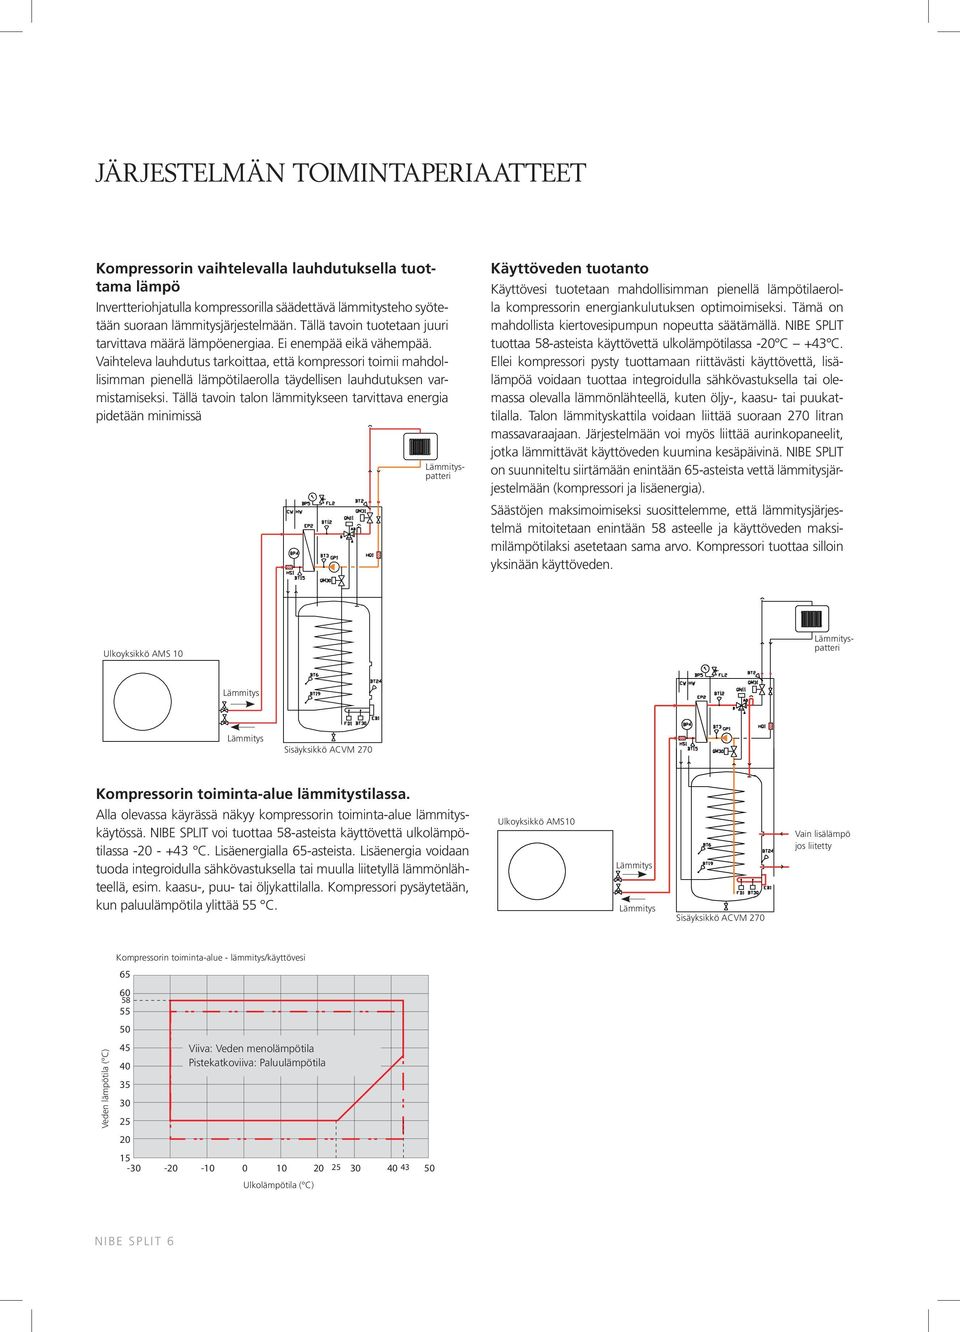 Vaihteleva lauhdutus tarkoittaa, että kompressori toimii mahdollisimman pienellä lämpötilaerolla täydellisen lauhdutuksen varmistamiseksi.